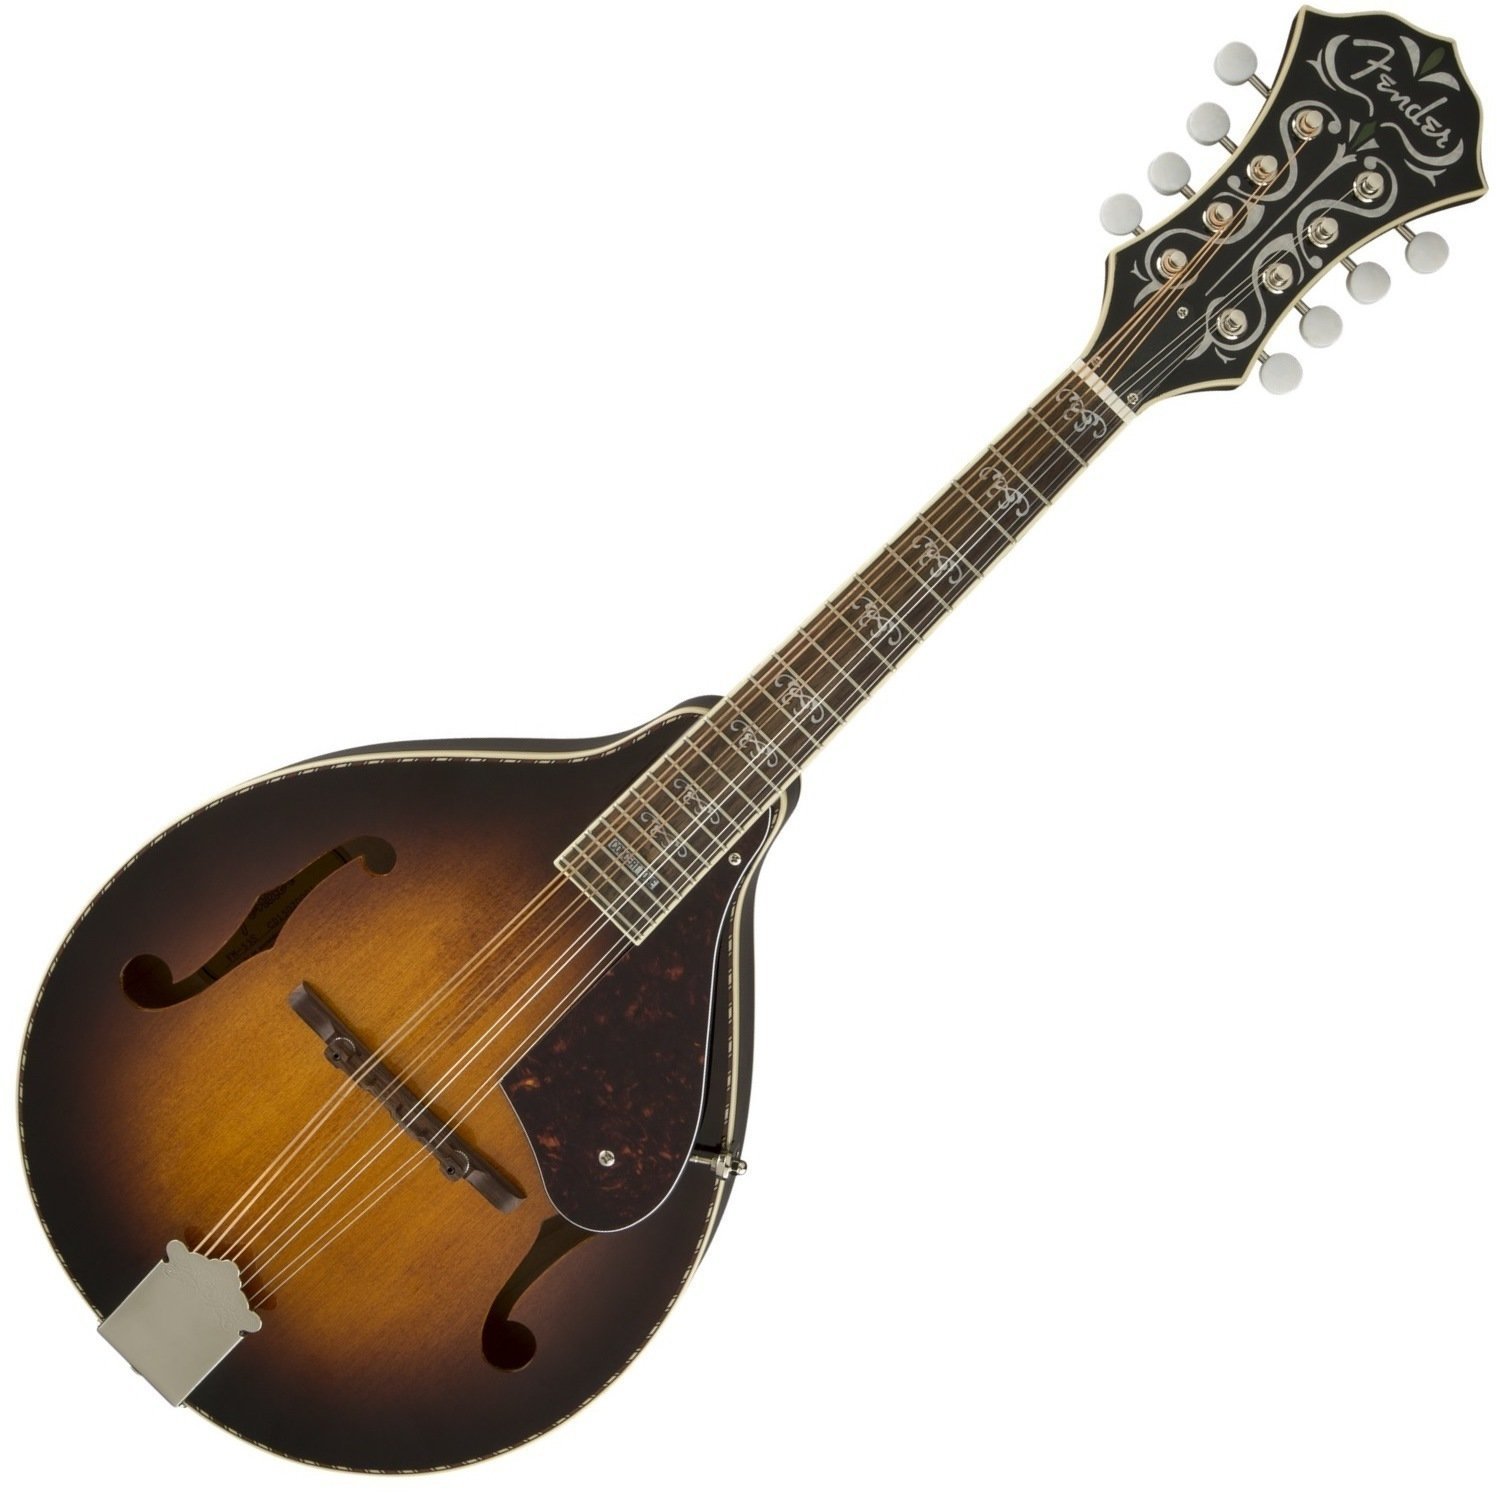 Mandoliini Fender Concert Tone Mandolin 53S